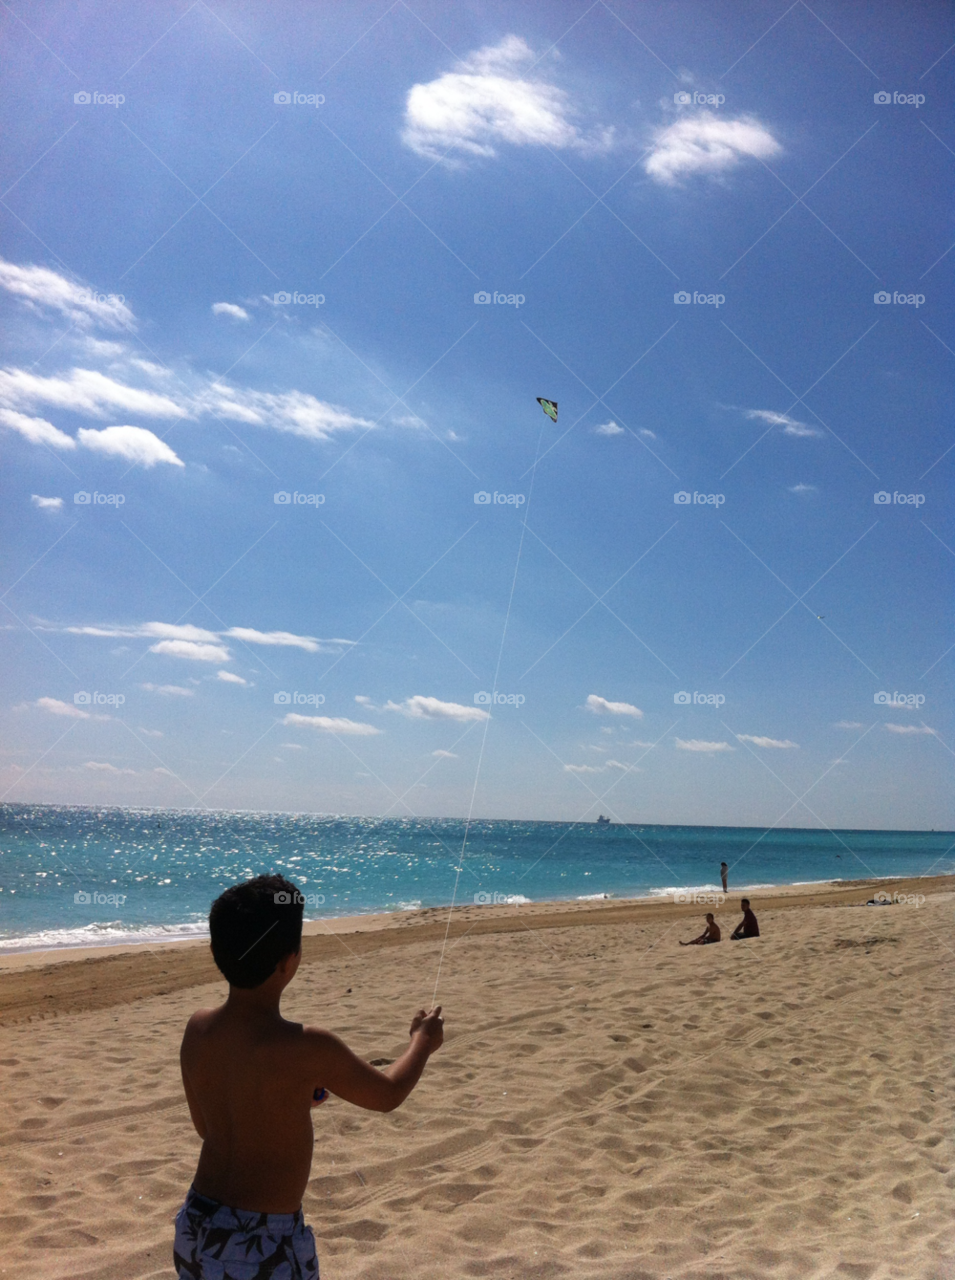 beach ocean kite flying by daflux